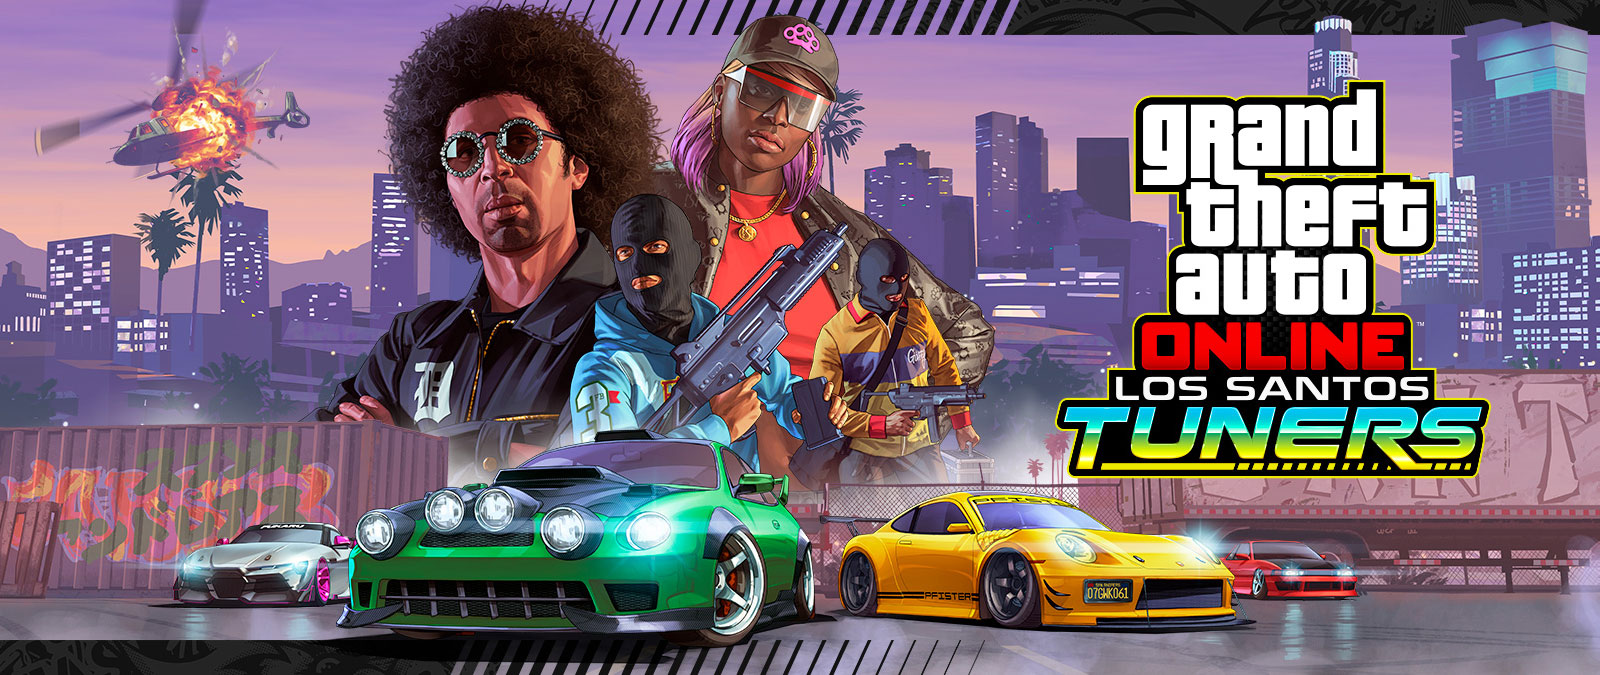 Grand Theft Auto Online, Los Santos Tuners. Vier personages die poseren voor de skyline van een stad met vier superauto's eronder 